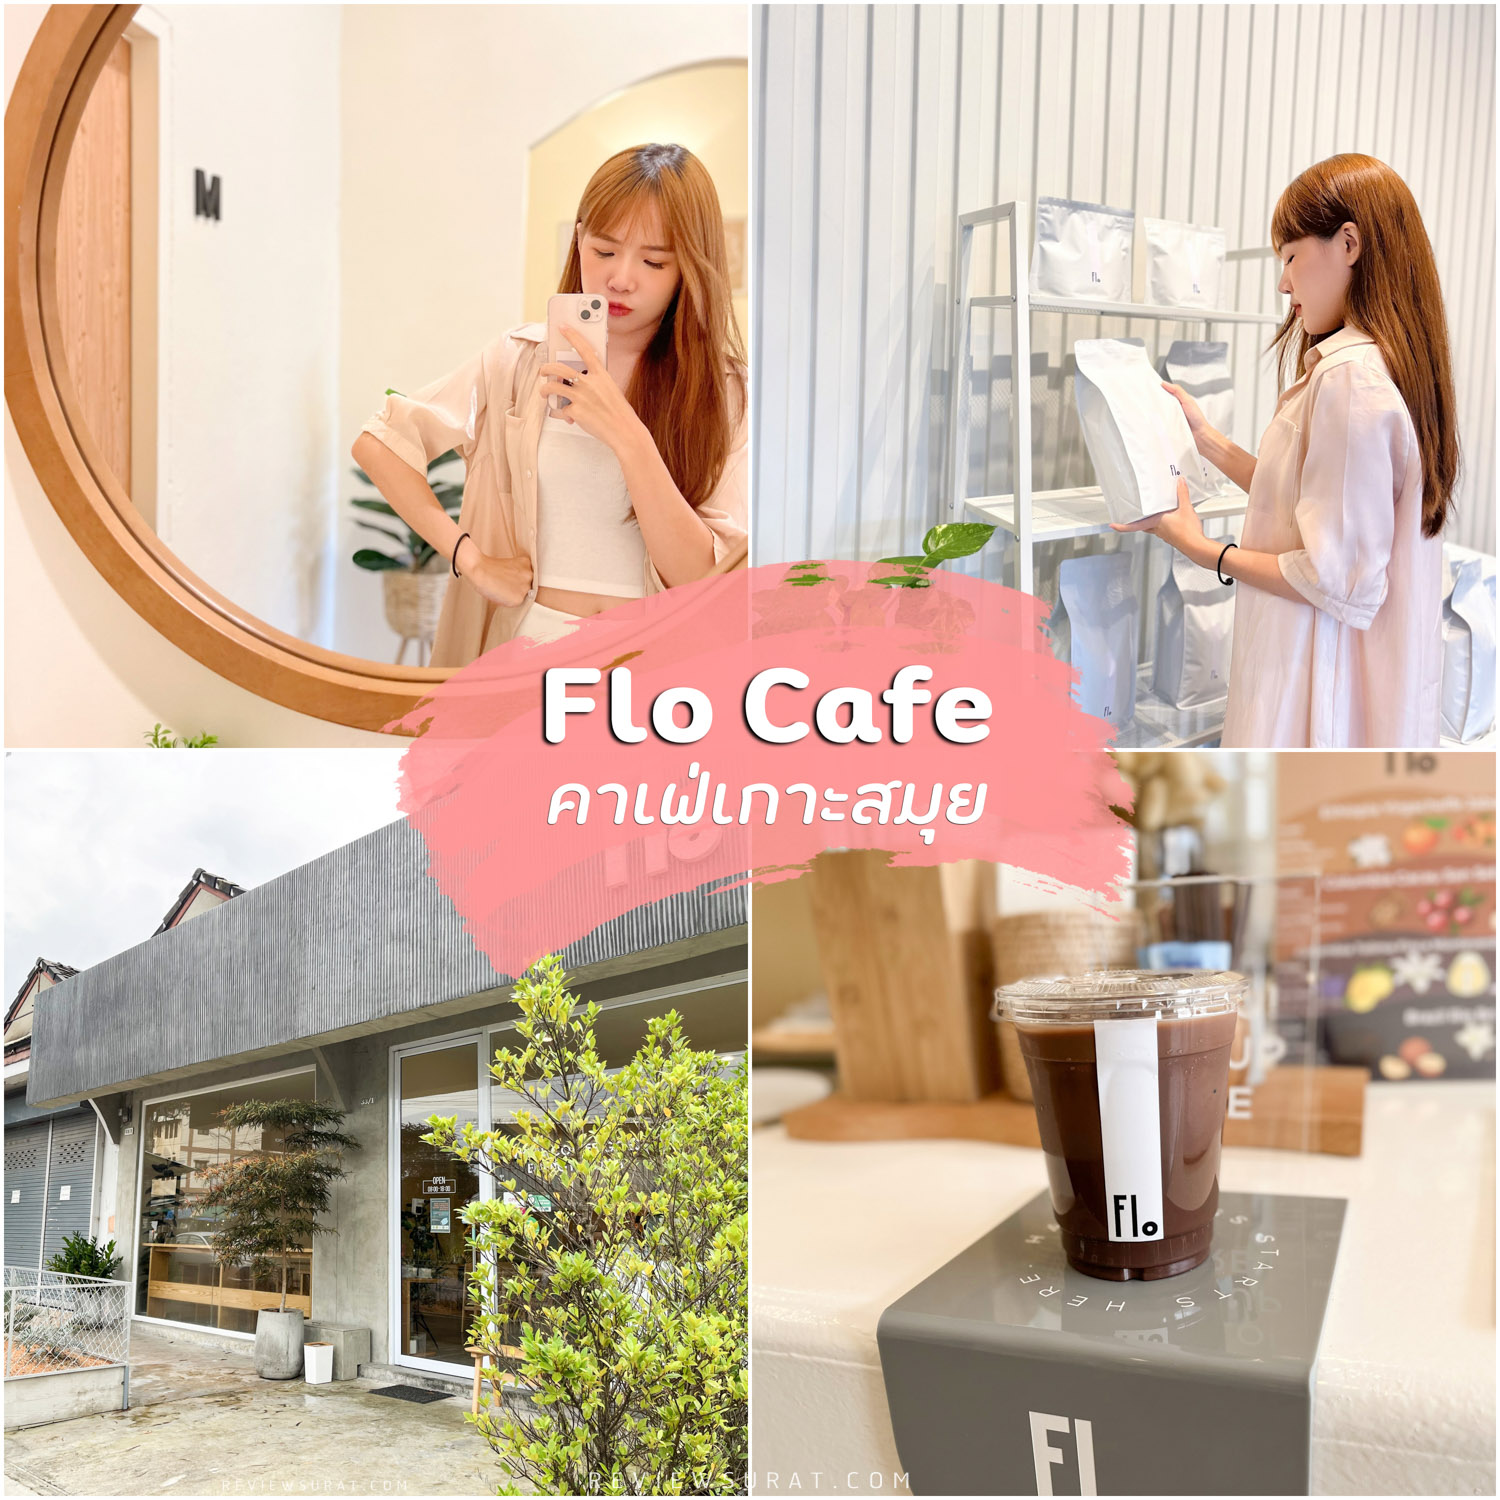 Flo Cafe คาเฟ่เกาะสมุย คาเฟ่สไตล์เกาหลีมุมถ่ายรูปเพียบ มีเมนูกาแฟลาเต้อาร์ตด้วยน้าา